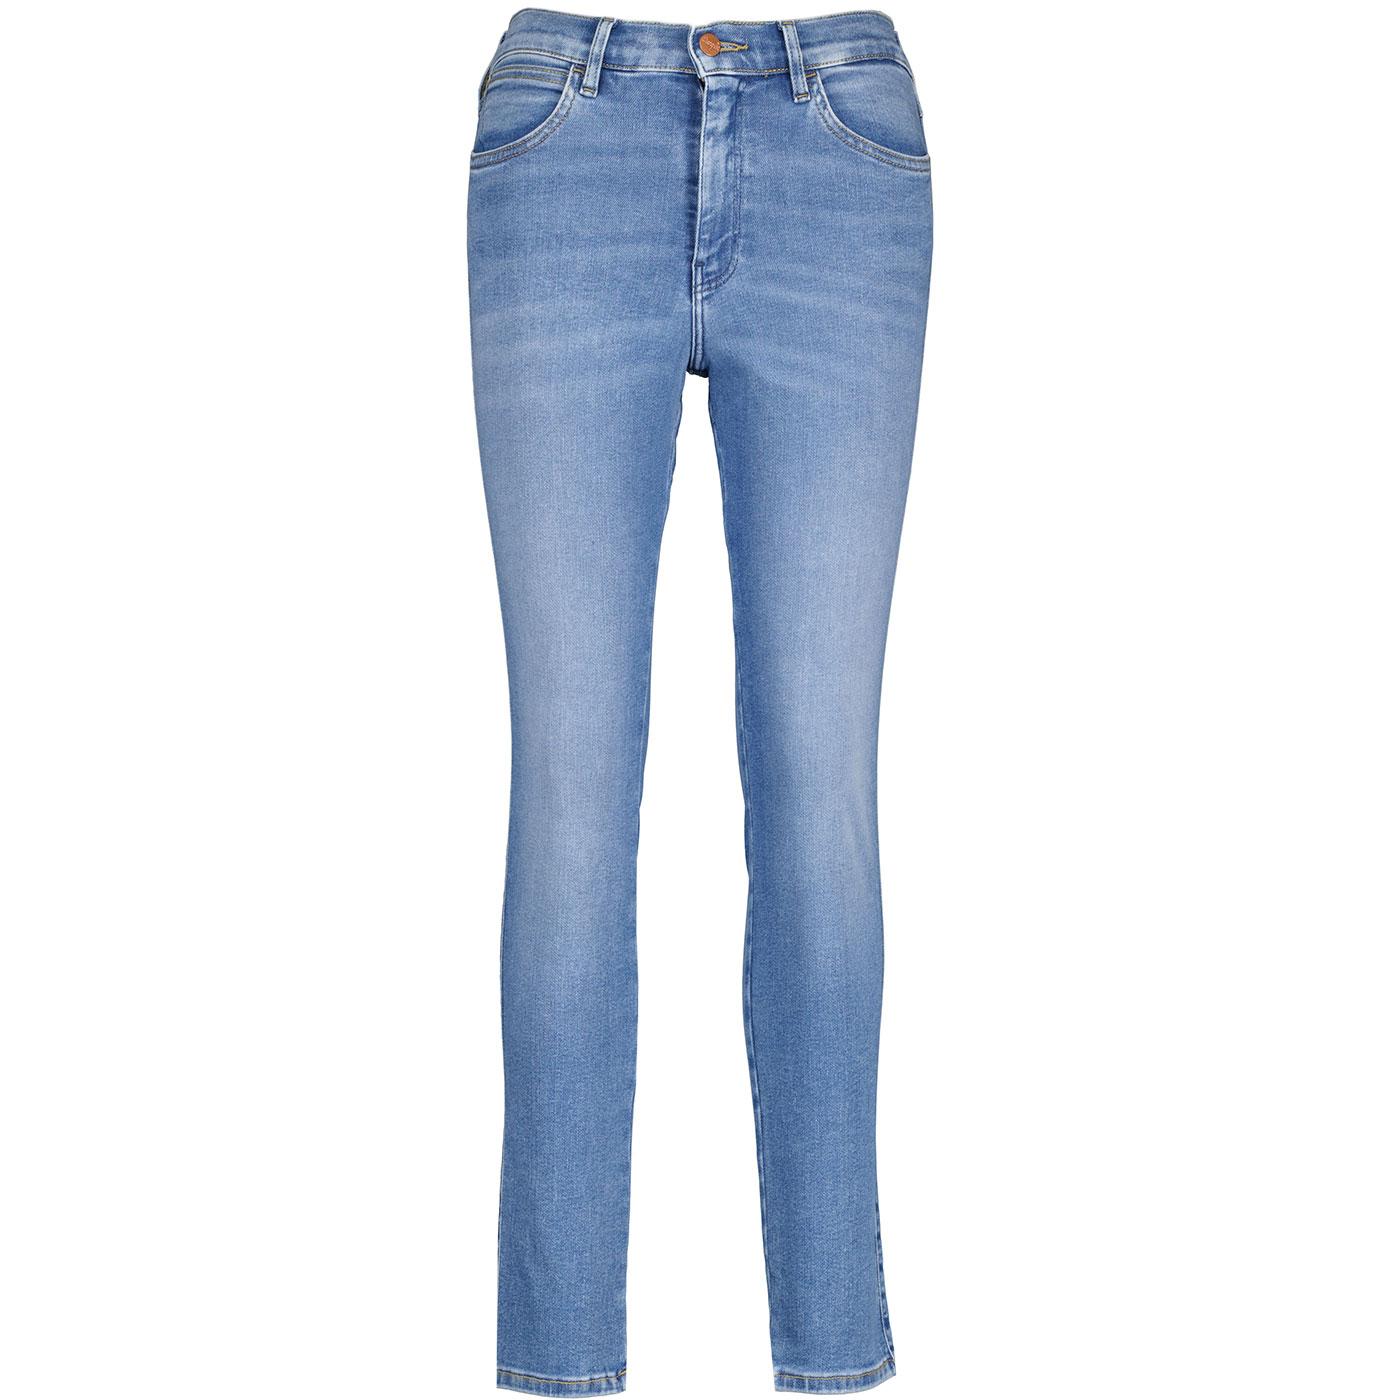 Wrangler Women's High Rise Retro Skinny Jeans (BL)